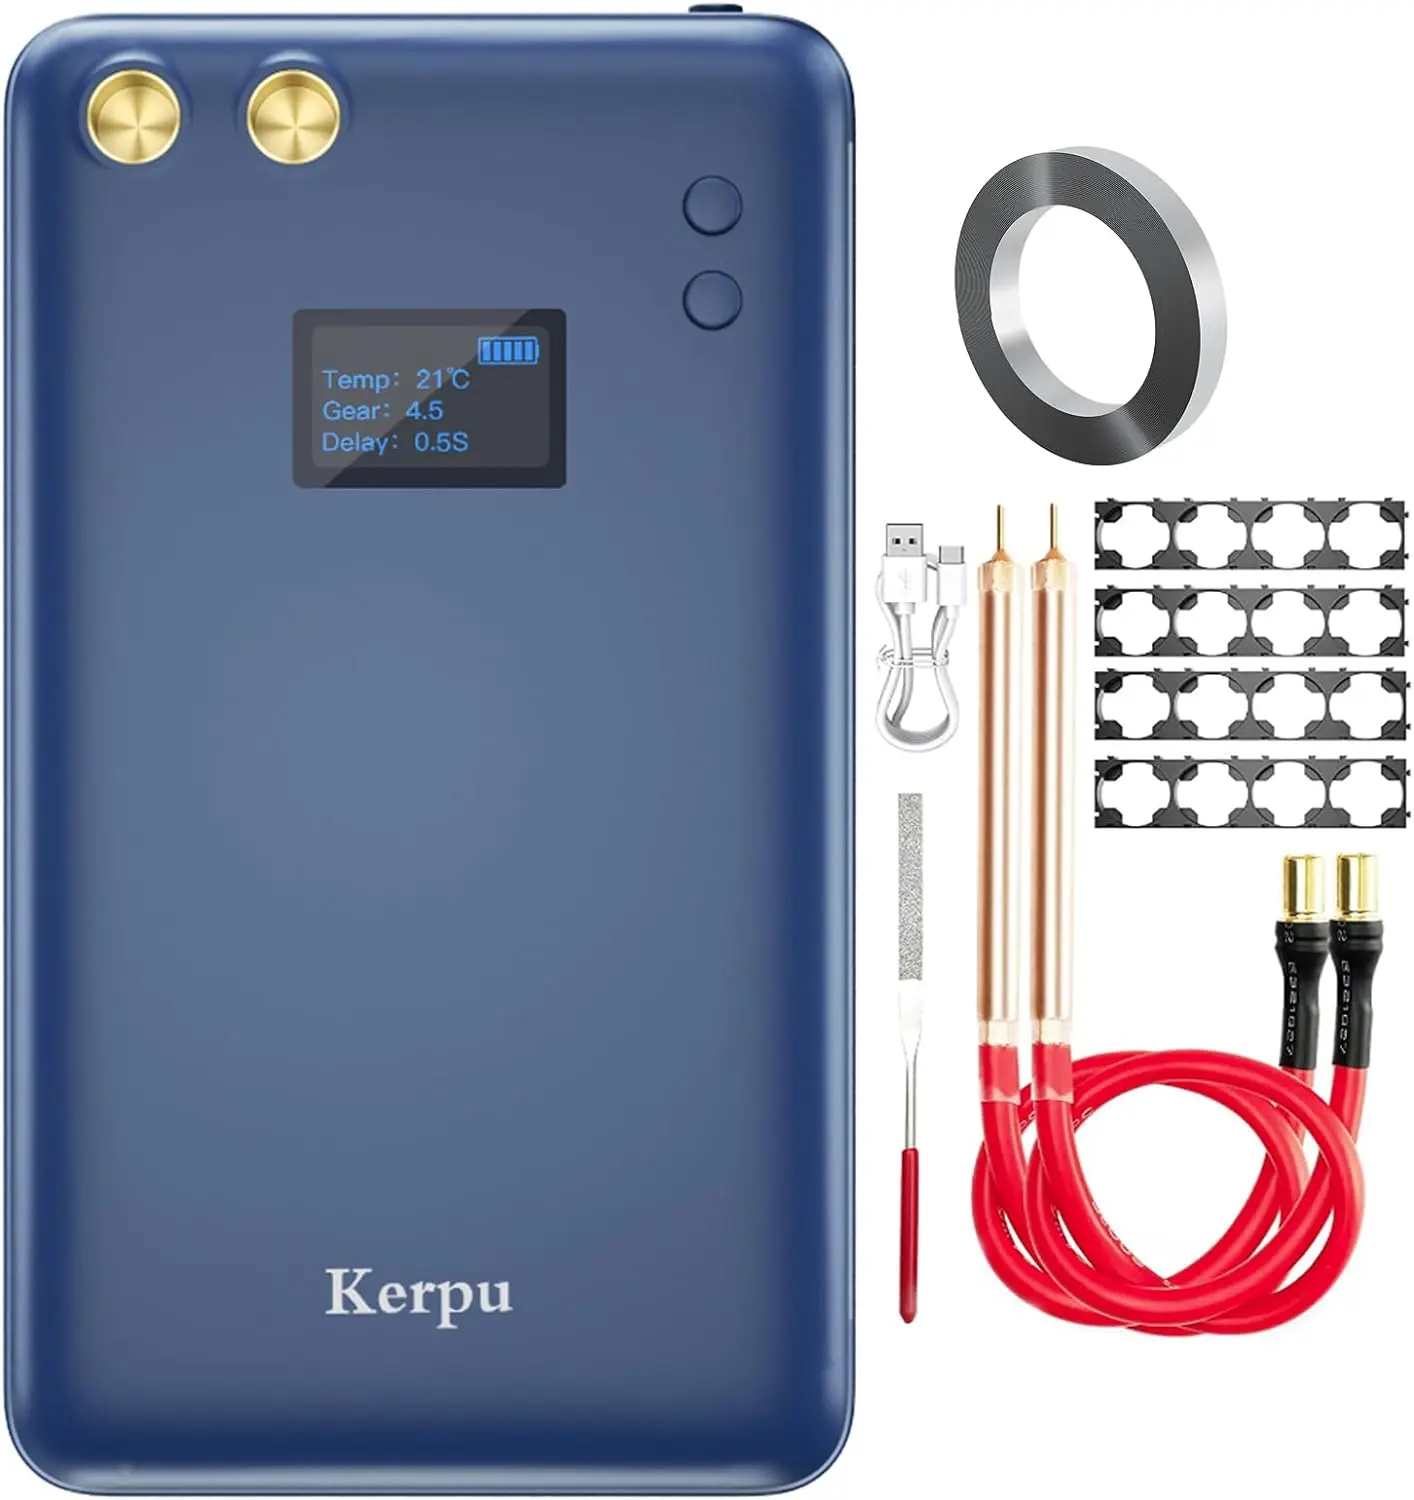 

Kerpu 5000mAh Upgraded LCD Screen Rechargeable Welder, Adjustable 80 Gears Portable Mini Welder, Type-C Intput Welder for 18